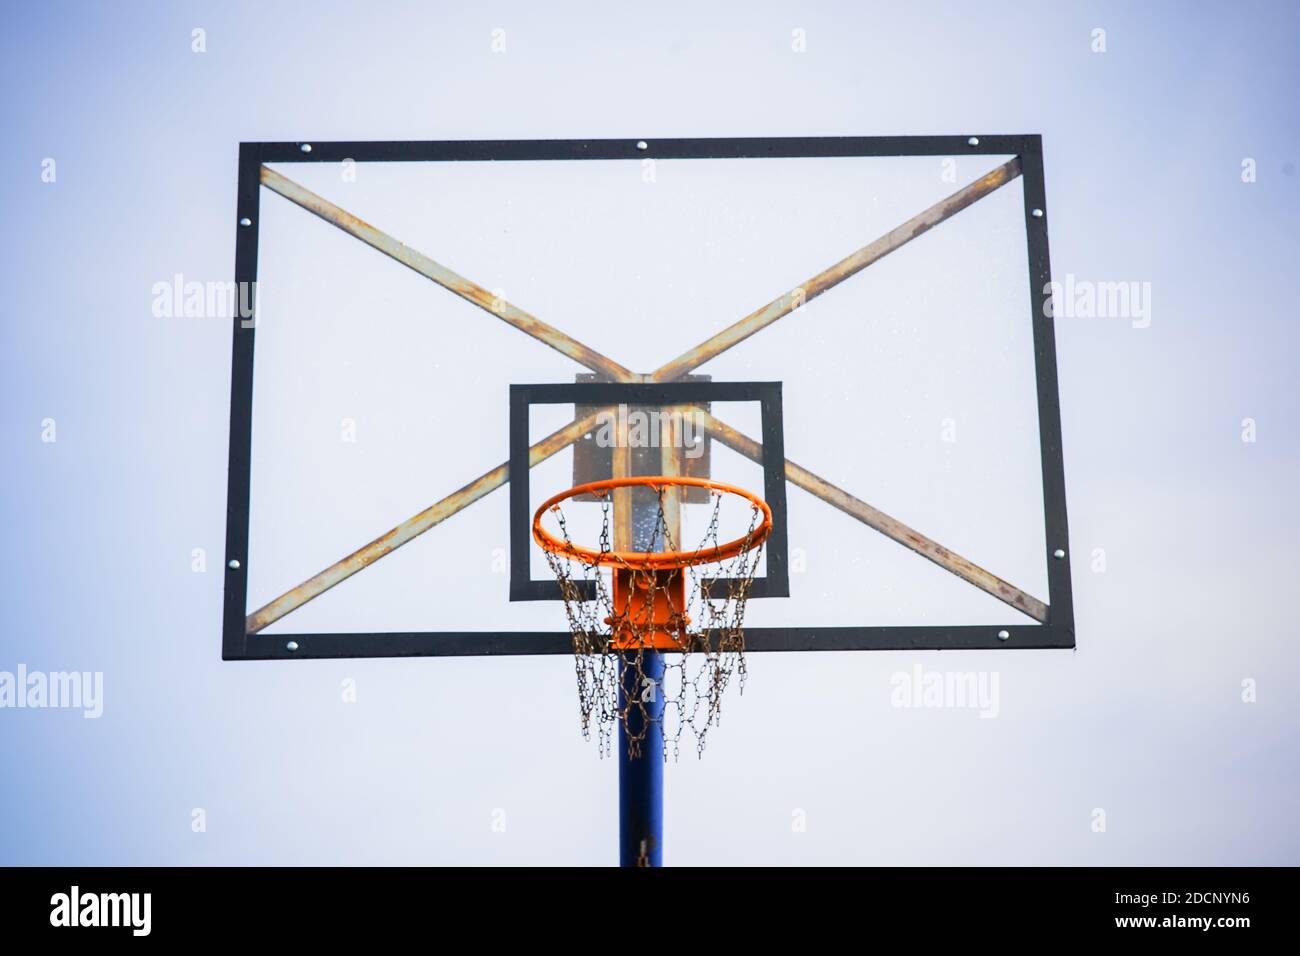 Basketballkorb mit transparentem Brett und Ketten statt Netz Gegen den hellblauen klaren Himmel am Nachmittag ab Einen vorderen unteren Winkel Stockfoto